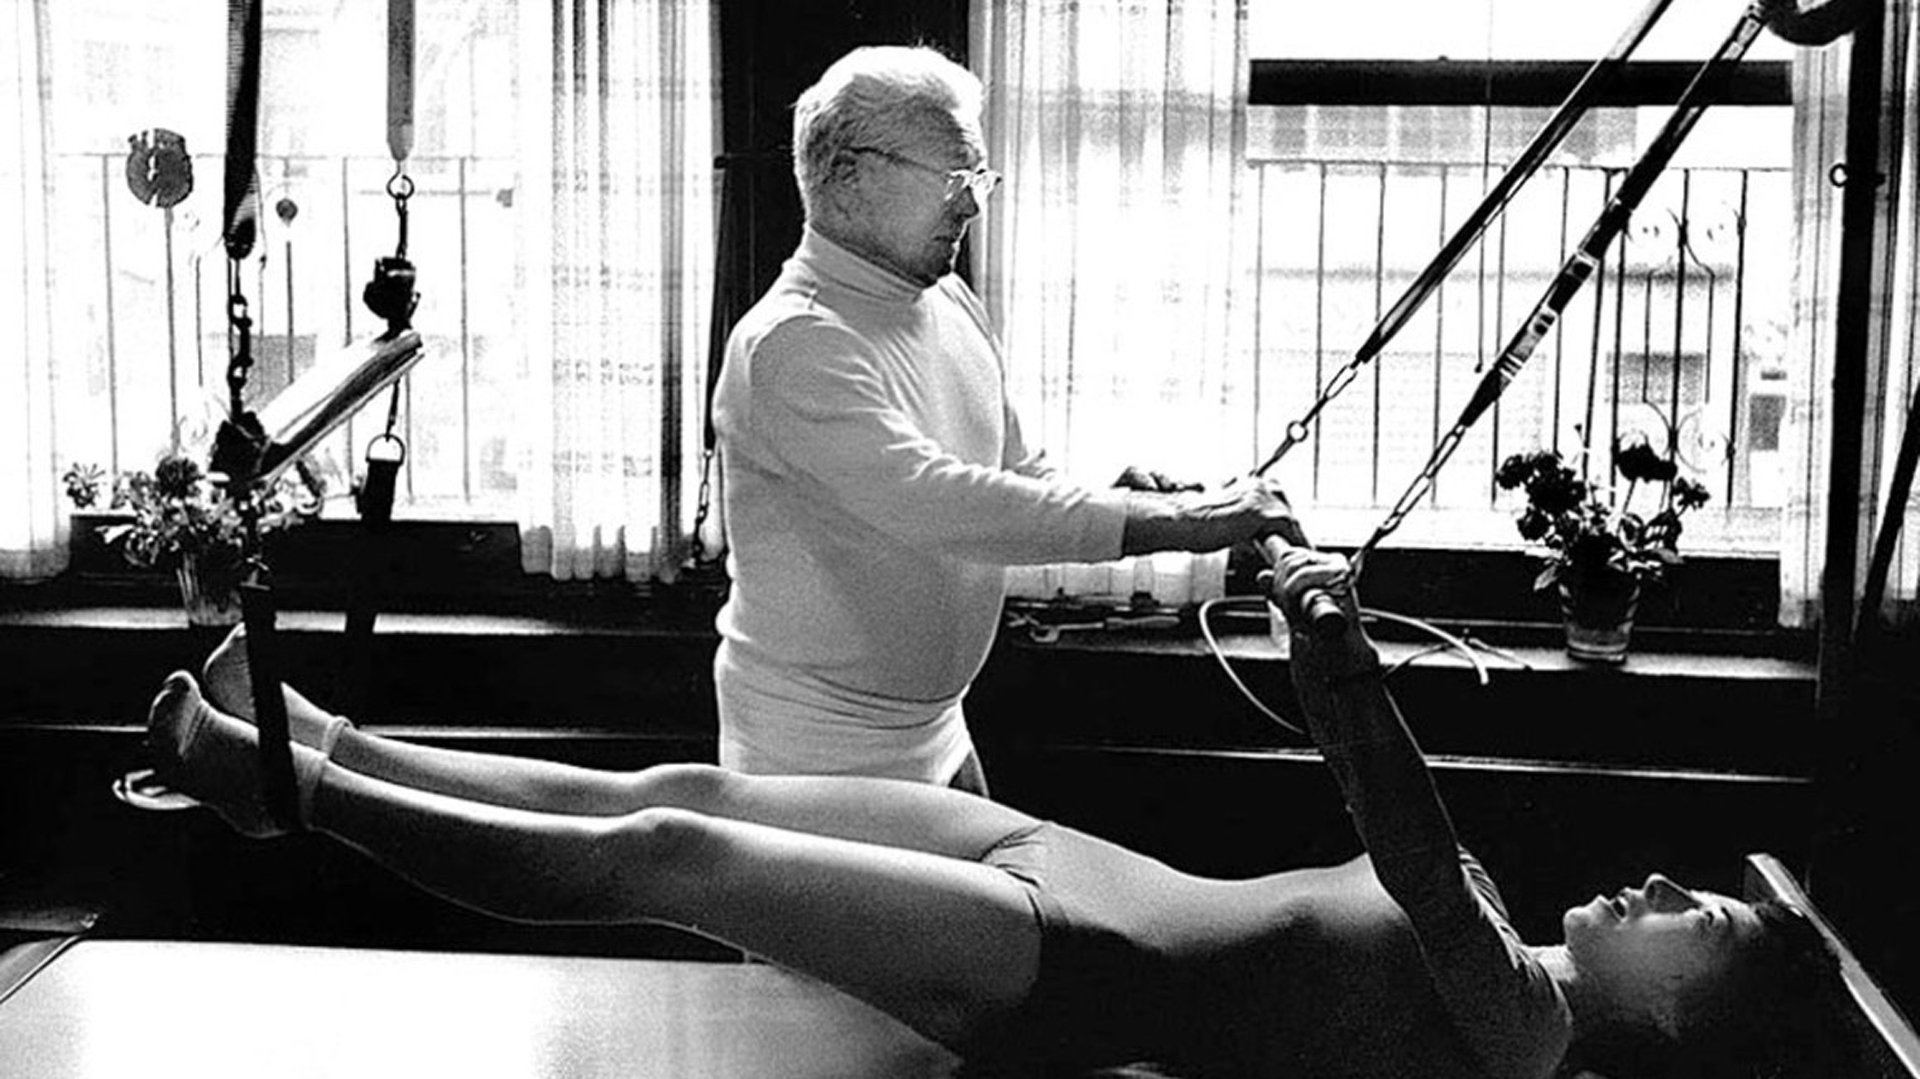 Hasta su muerte en 1967, Pilates continuó dando clases de gimnasia. Murió por un enfisema pulmonar: fumaba 15 puros al día